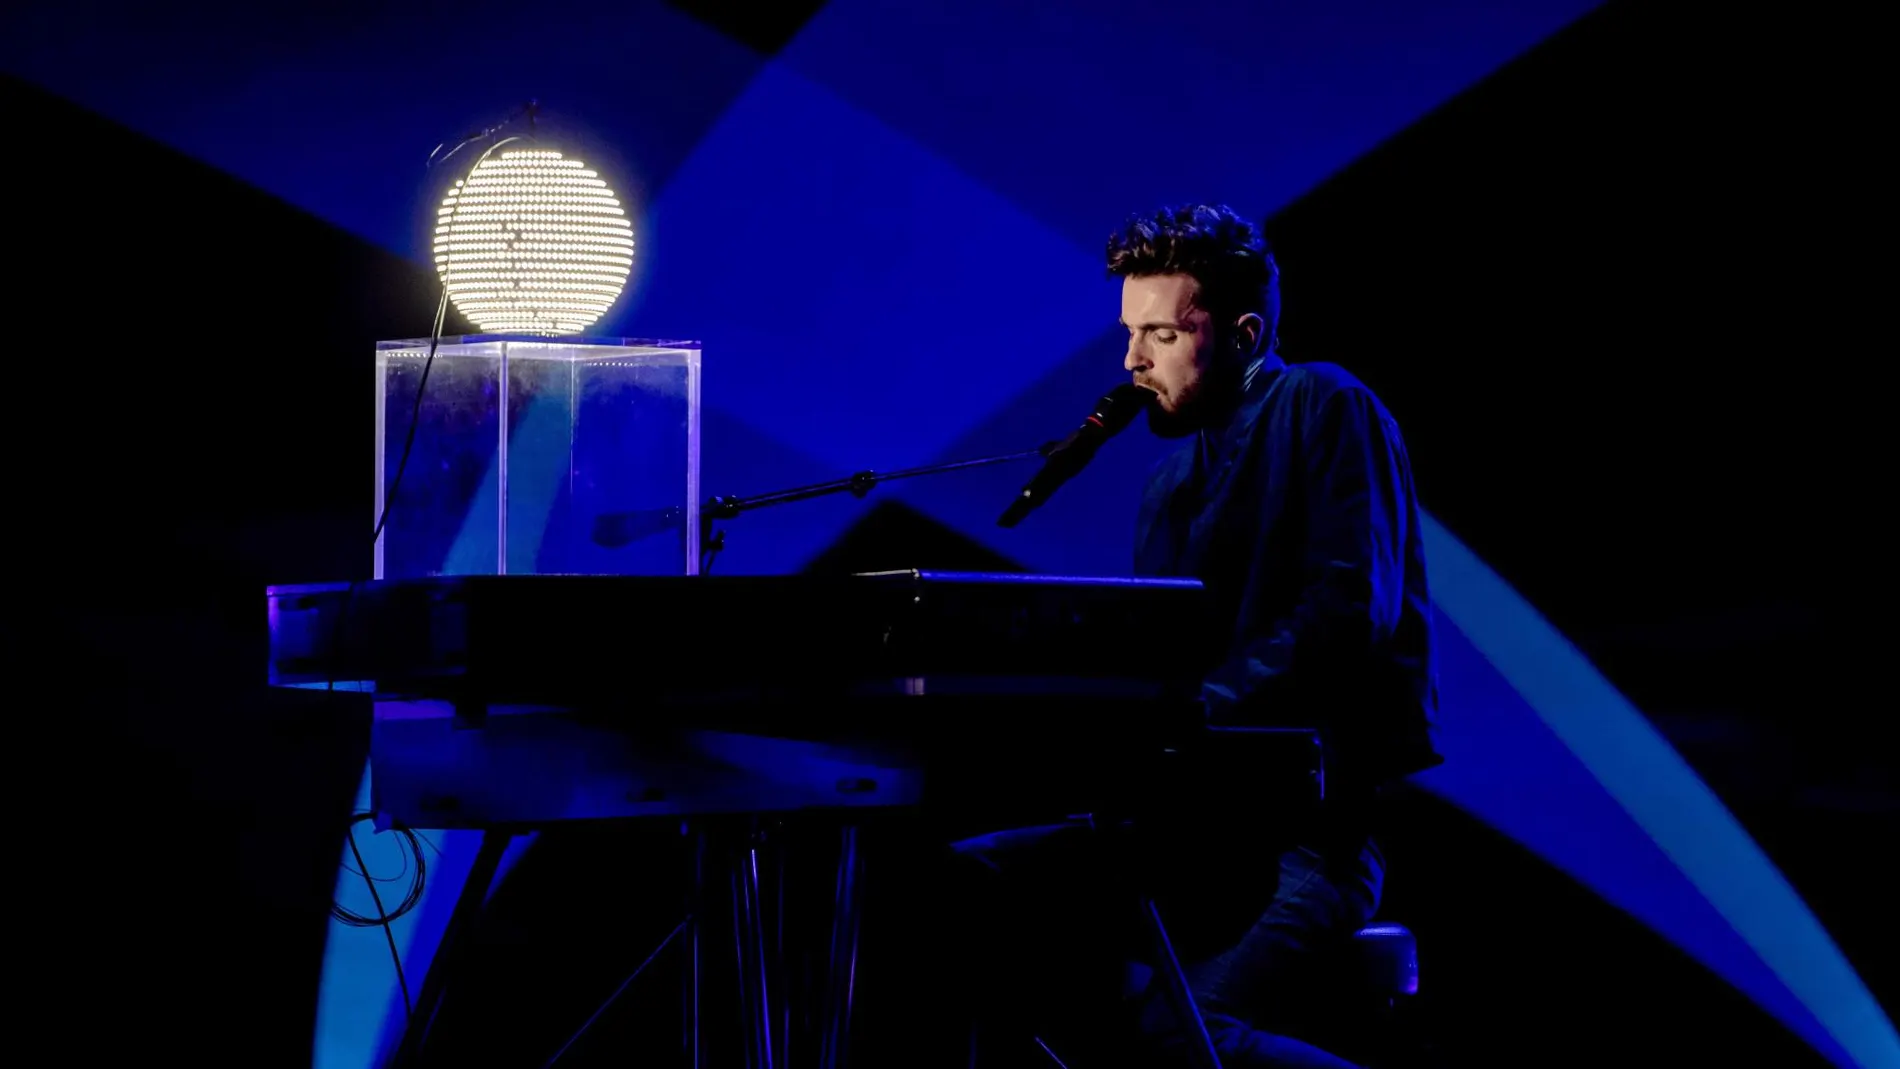 Las 5 canciones favoritas para ganar Eurovisión 2019